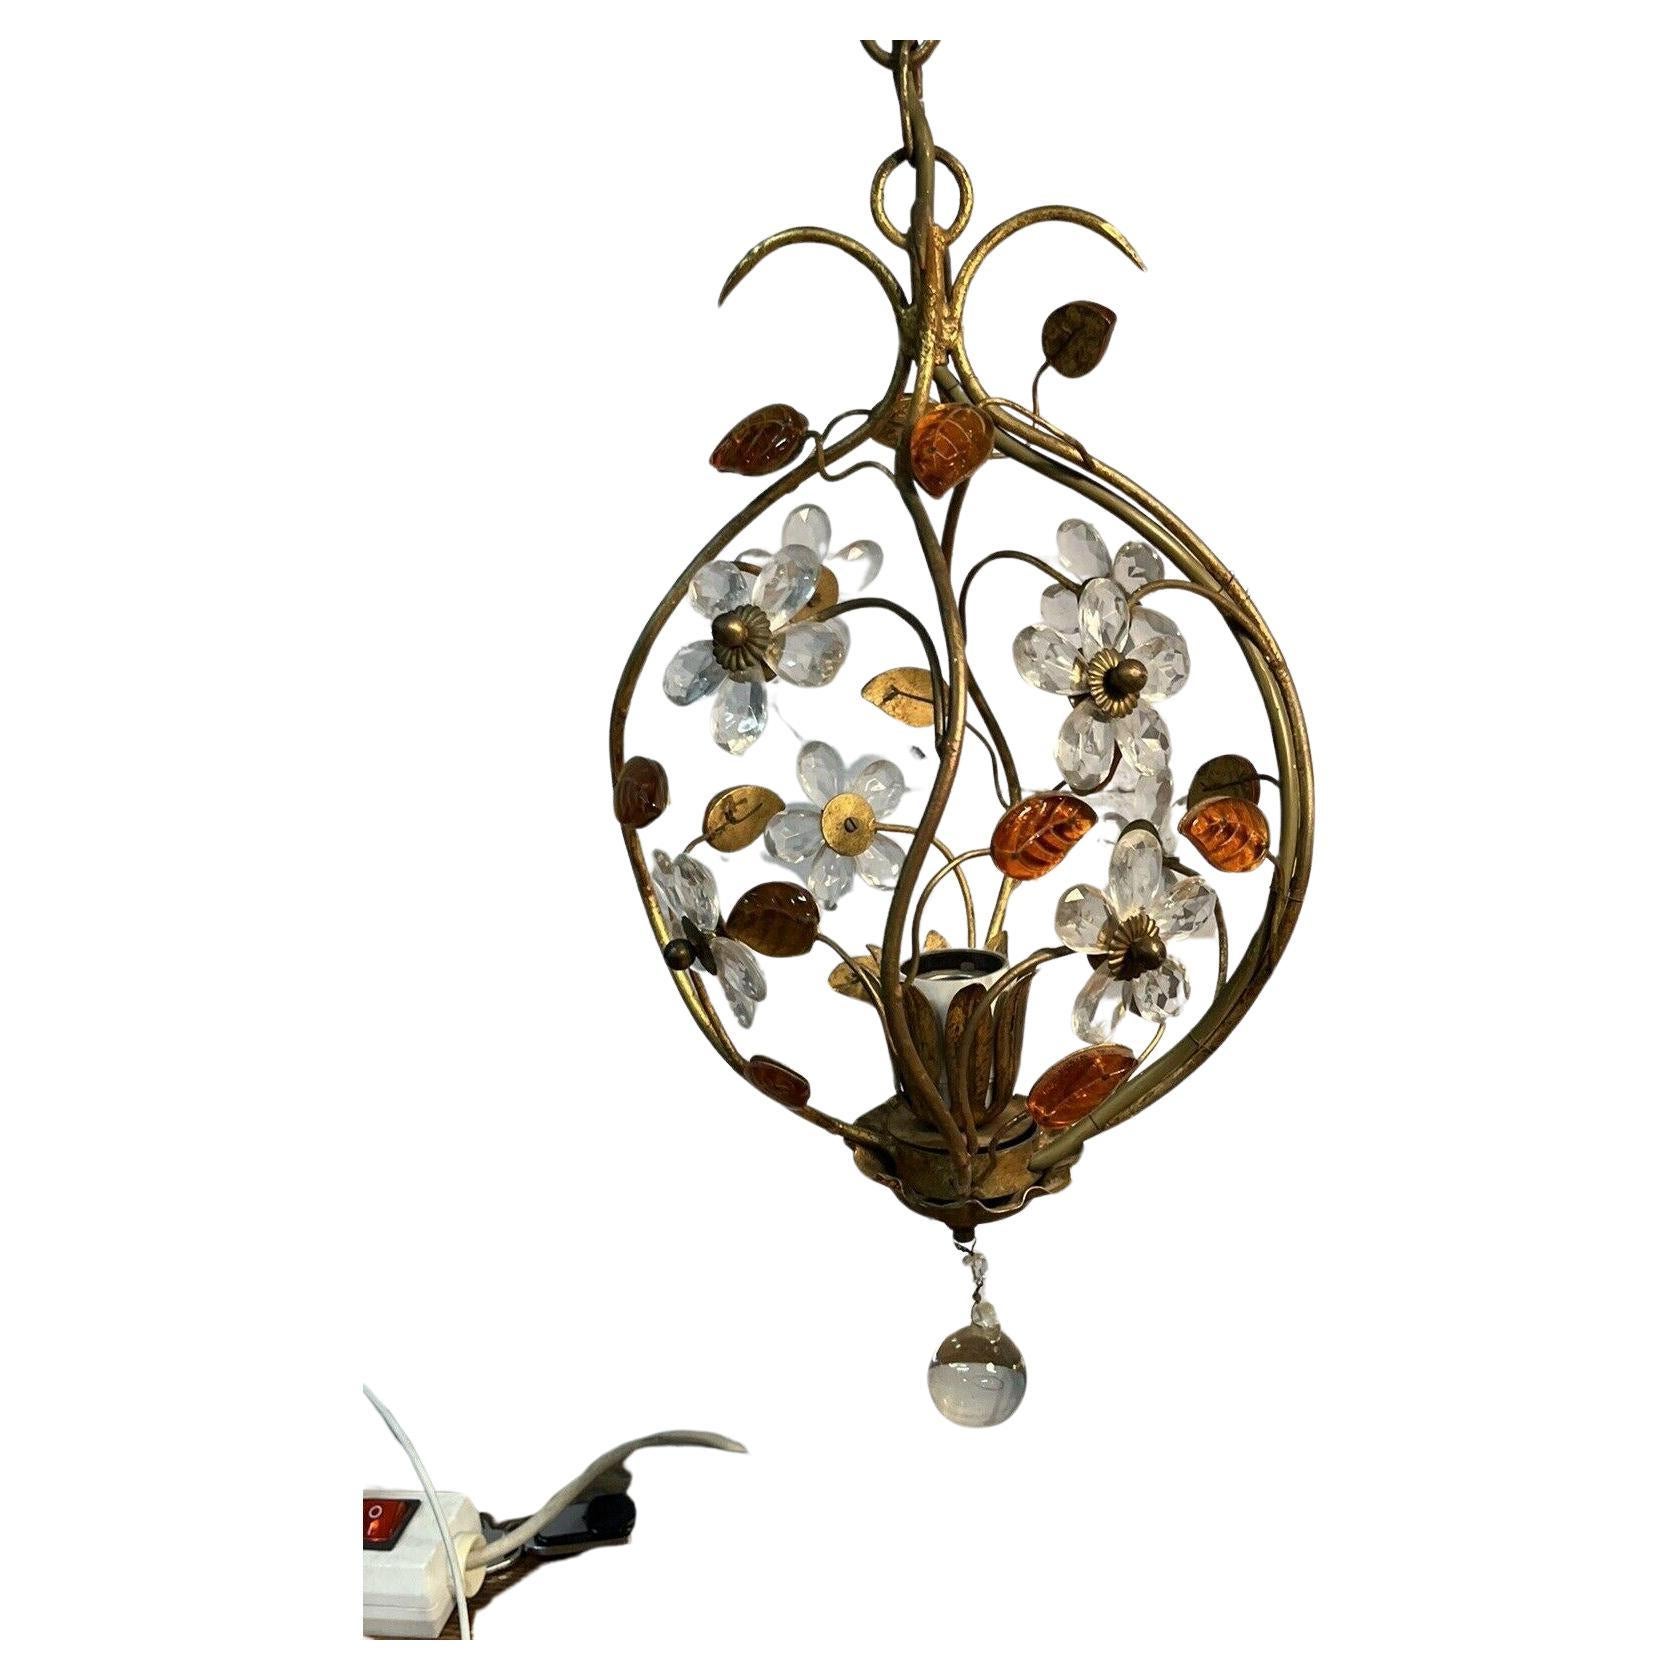 c1950's Italian Regency Crystal Flower and Petal Hanging Lantern by Banci Firenze. Schöne Beleuchtung von Banci.